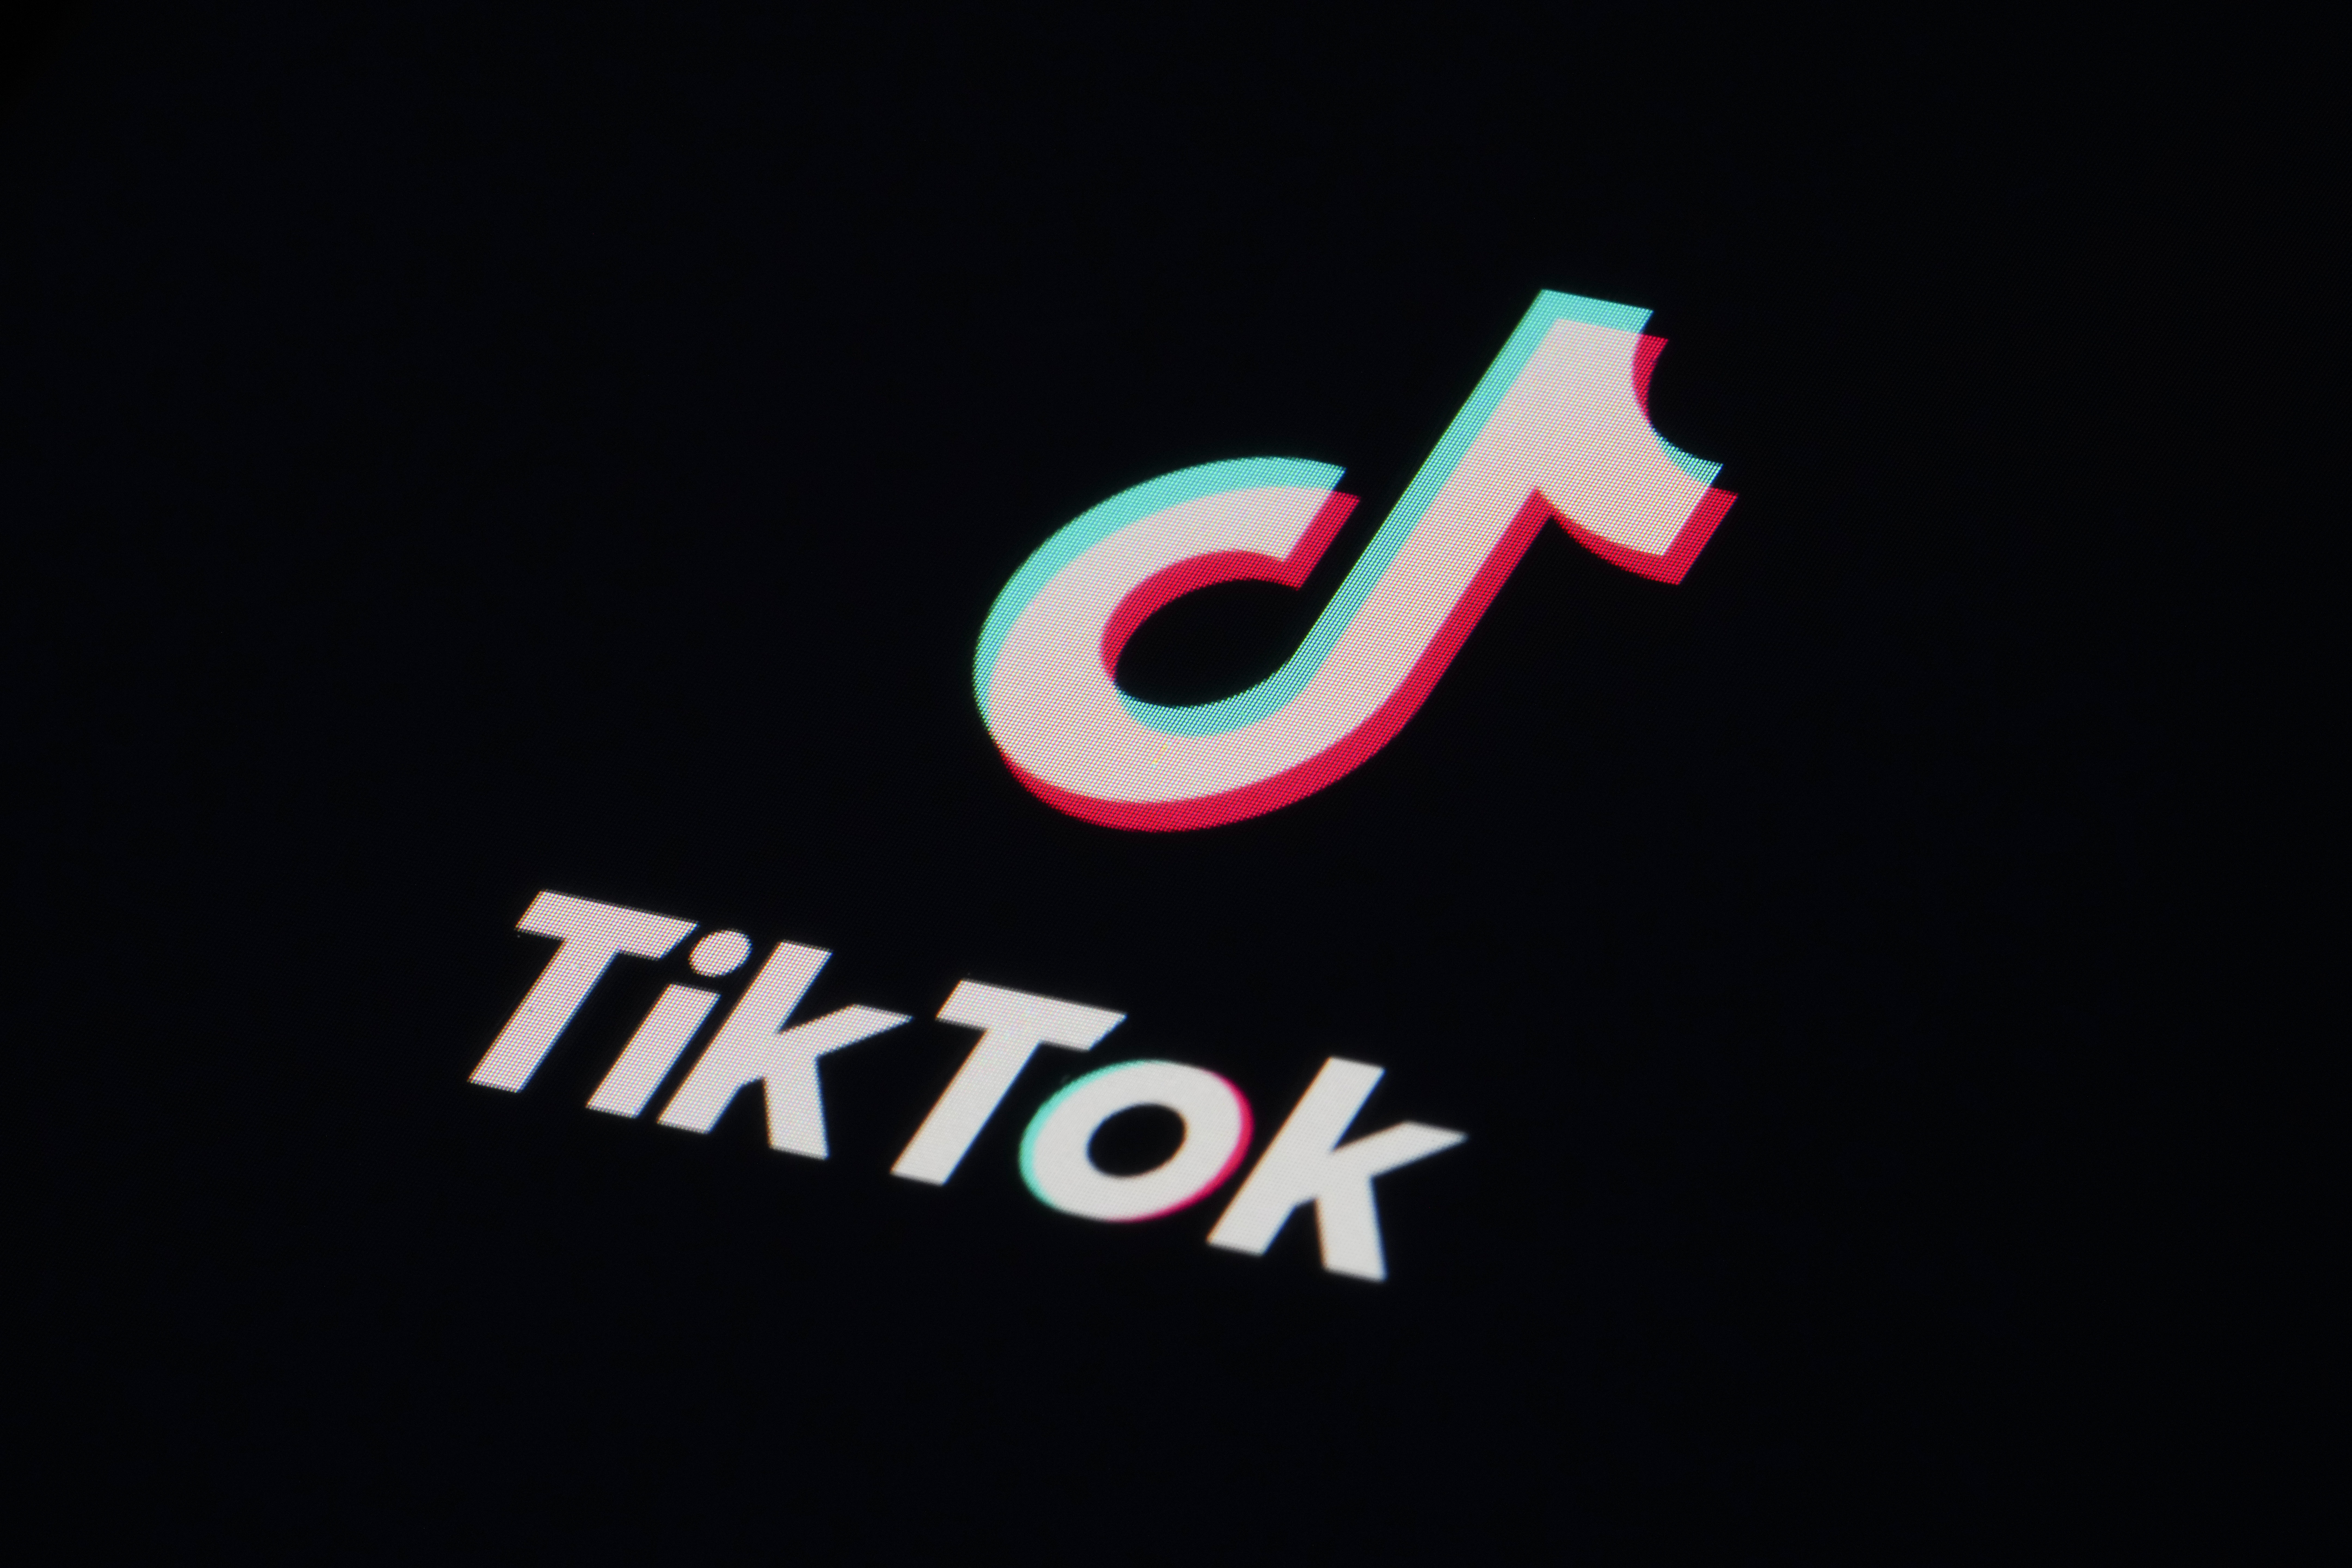 Montana se convrtió en el primer estado de Estados Unidos en prohibir TikTok